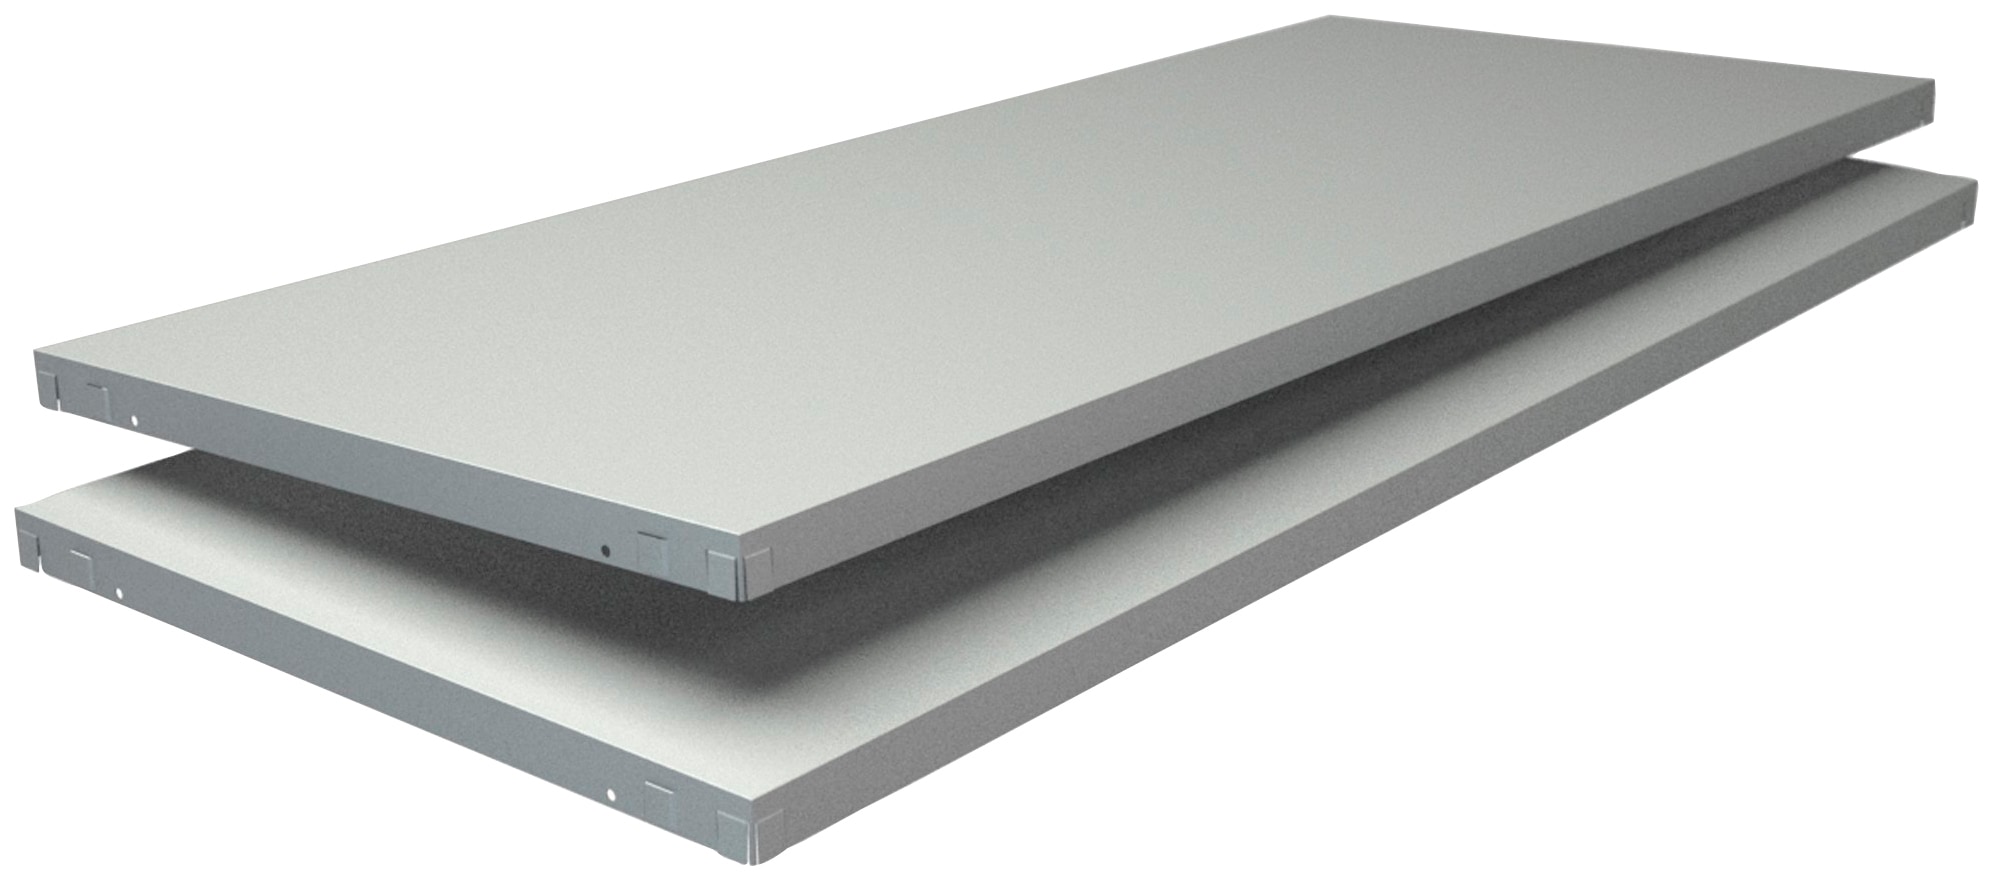 SCHULTE Regalwelt Regalelement "Stecksystem-Fachboden PowerMax", 2 Stück weiß, 1200x500 mm